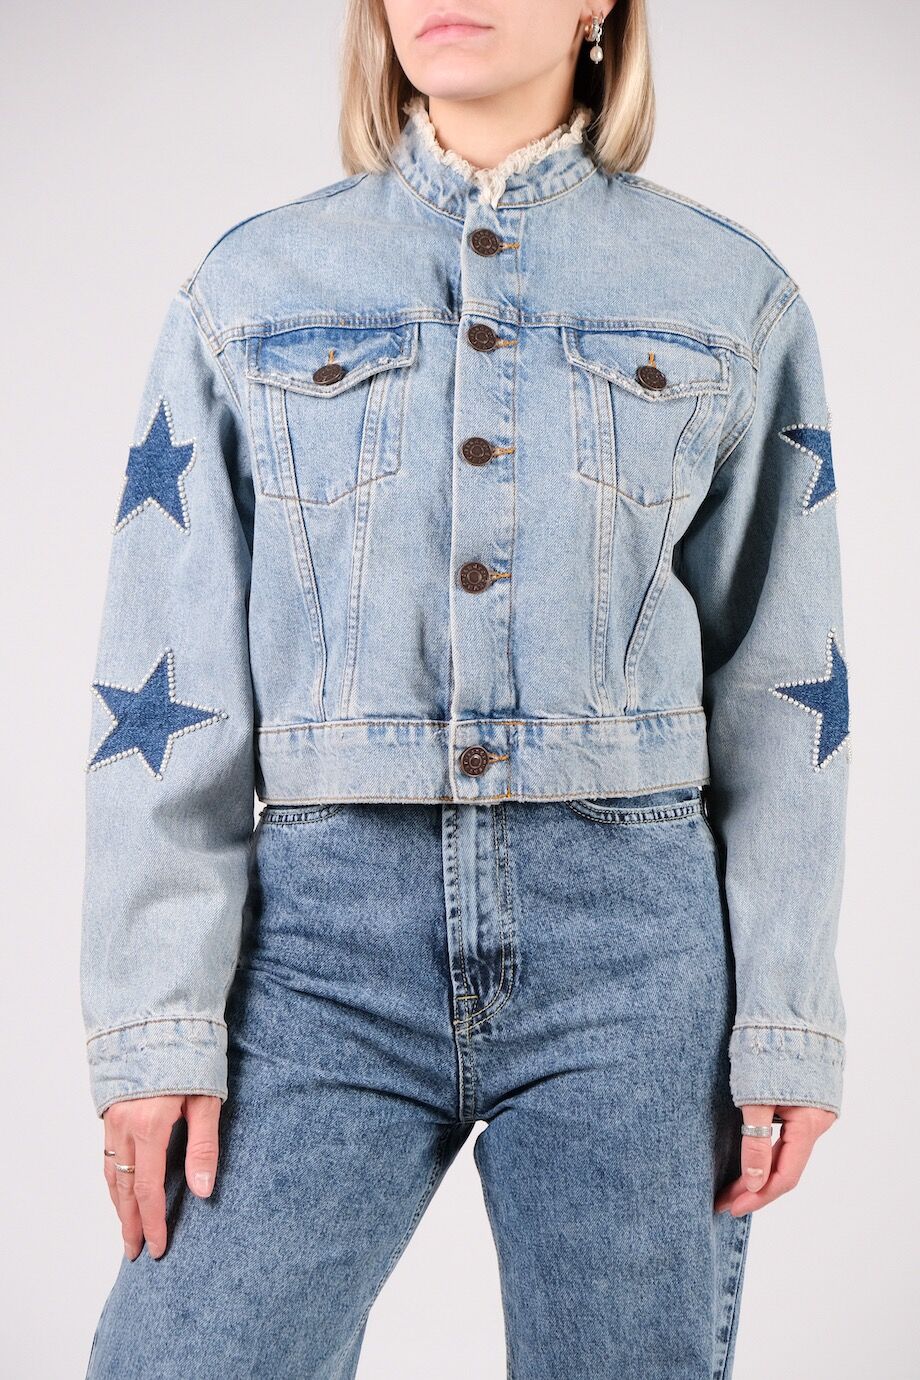 image 1 Джинсовая куртка голубого цвета со звездами на рукавах